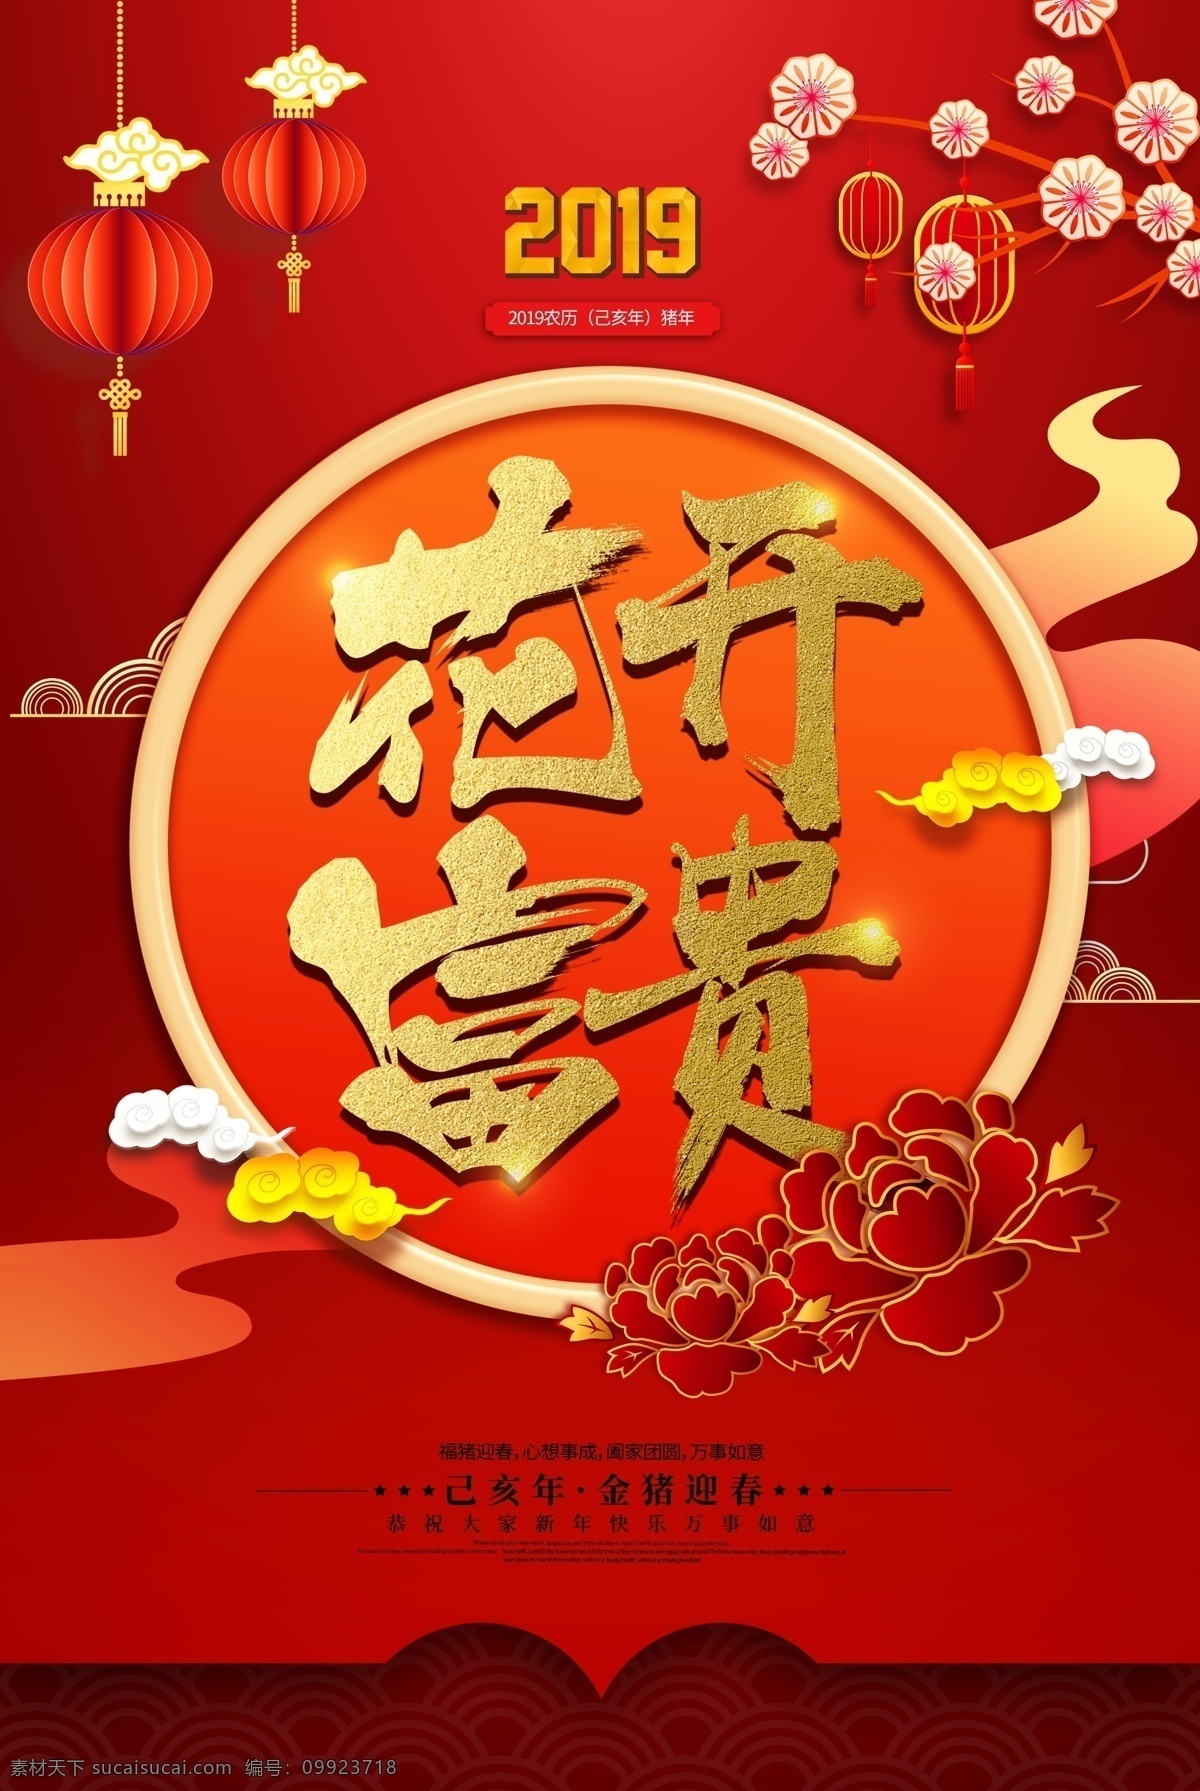 花开 富贵 春节 新年 传统 红色 喜庆 花开富贵 传统节日海报